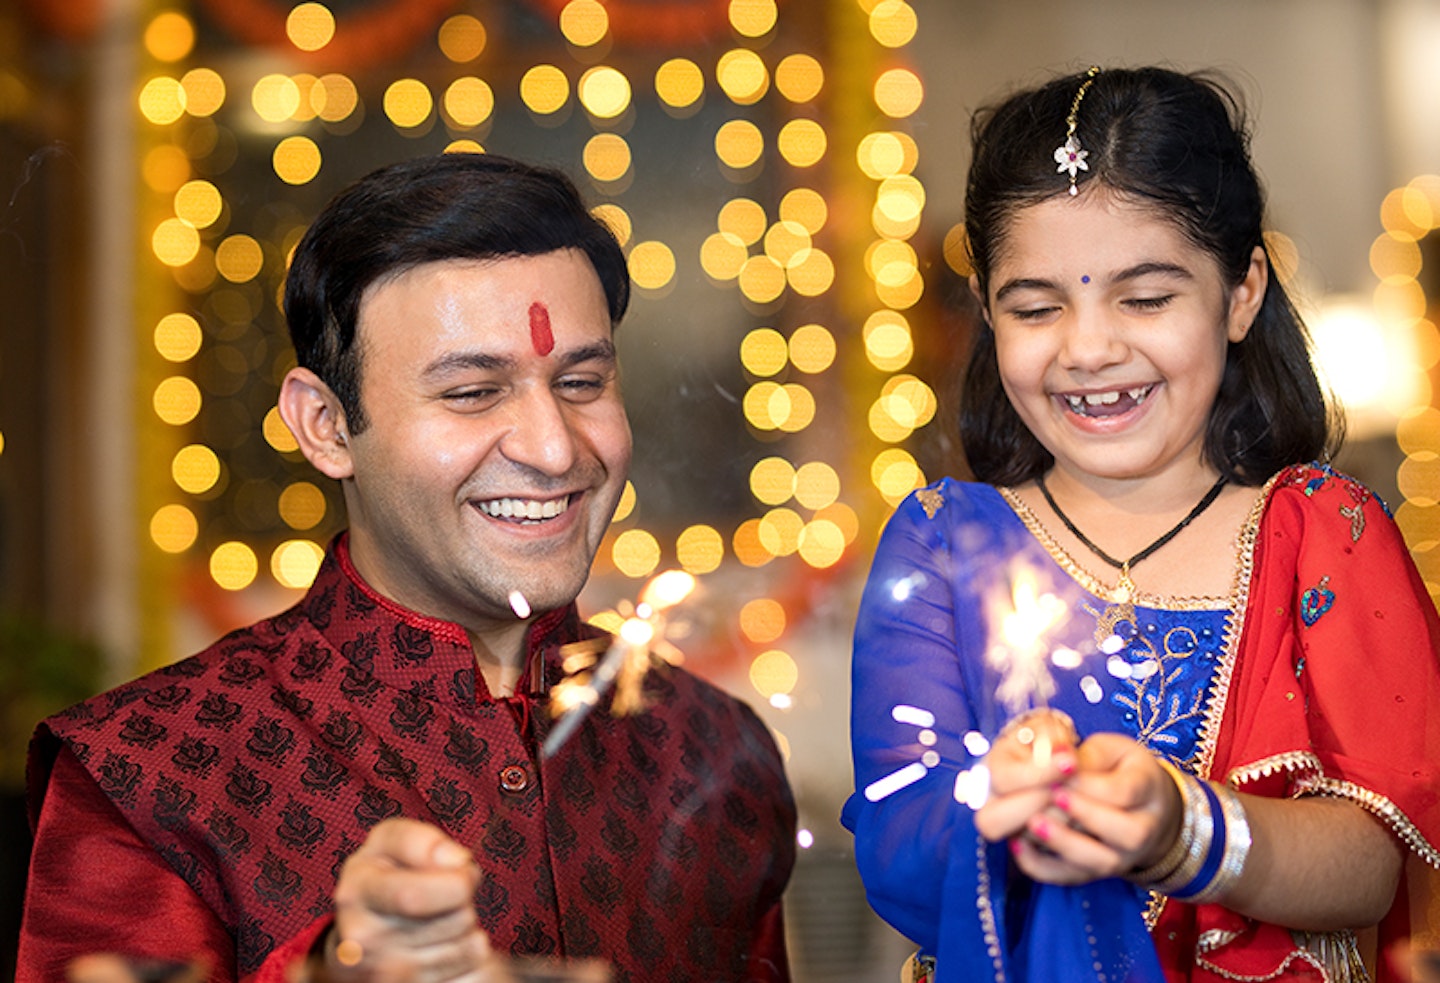 Diwali activities for kids